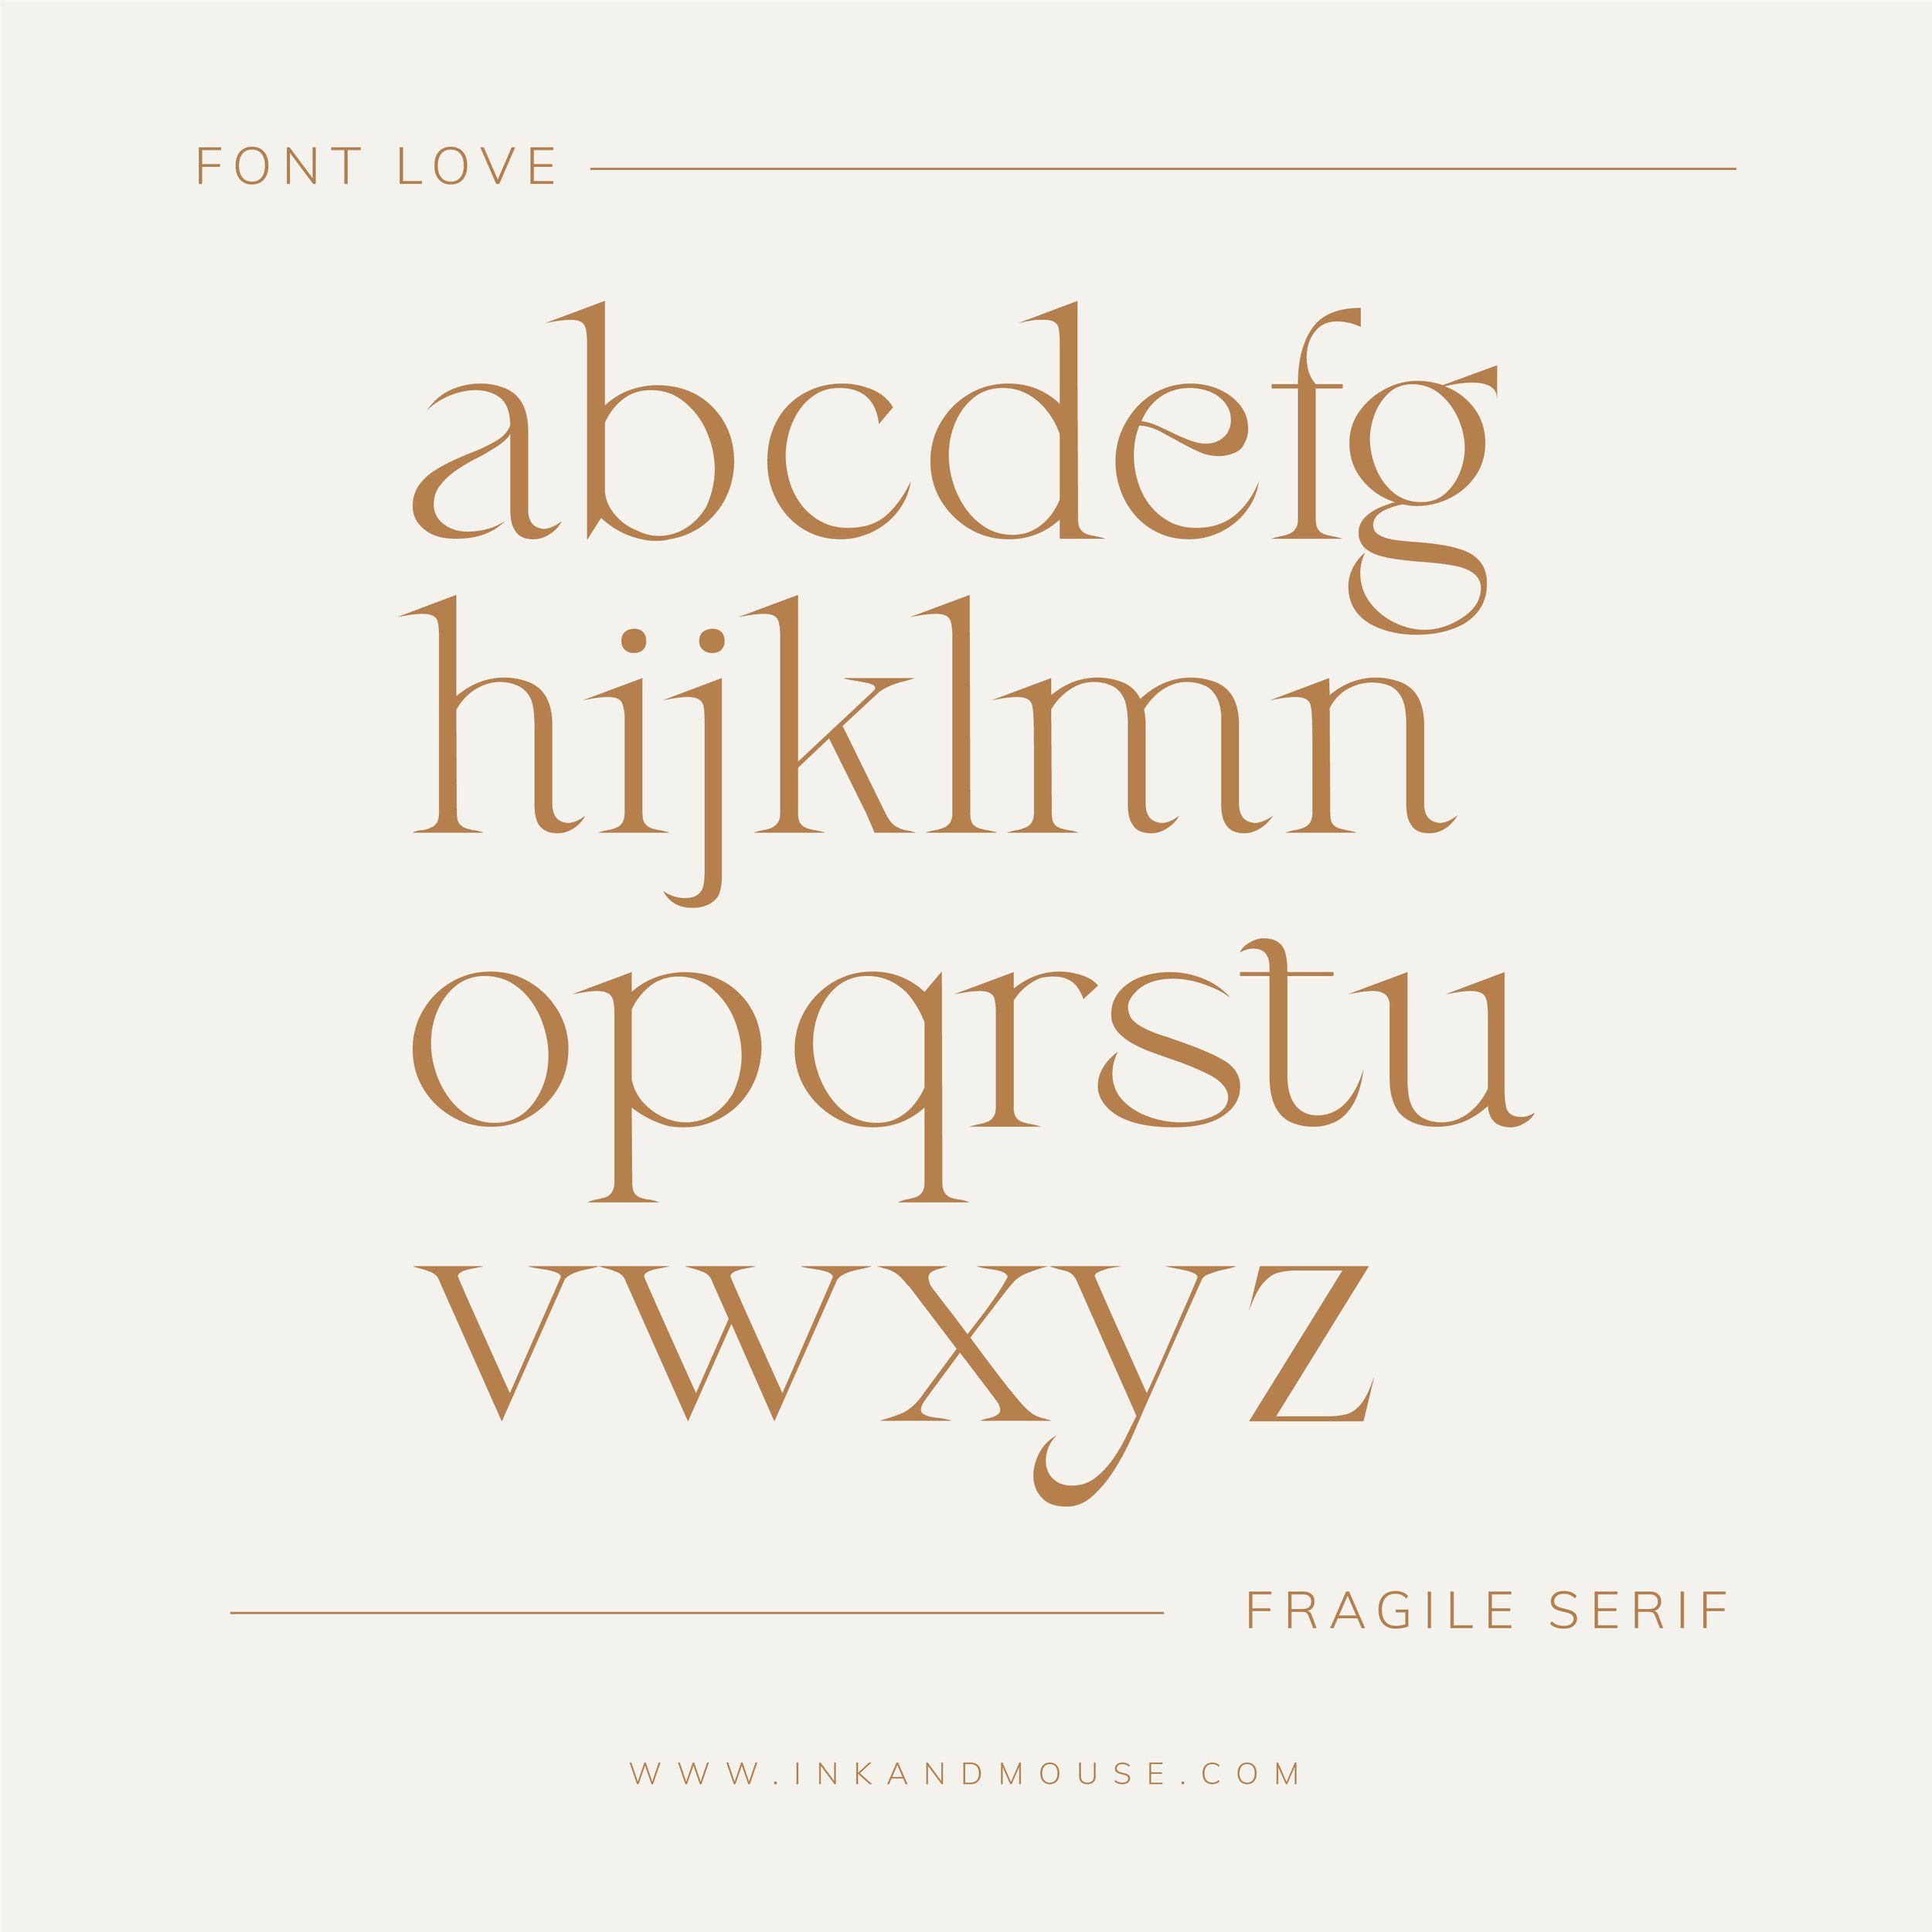 Font Love